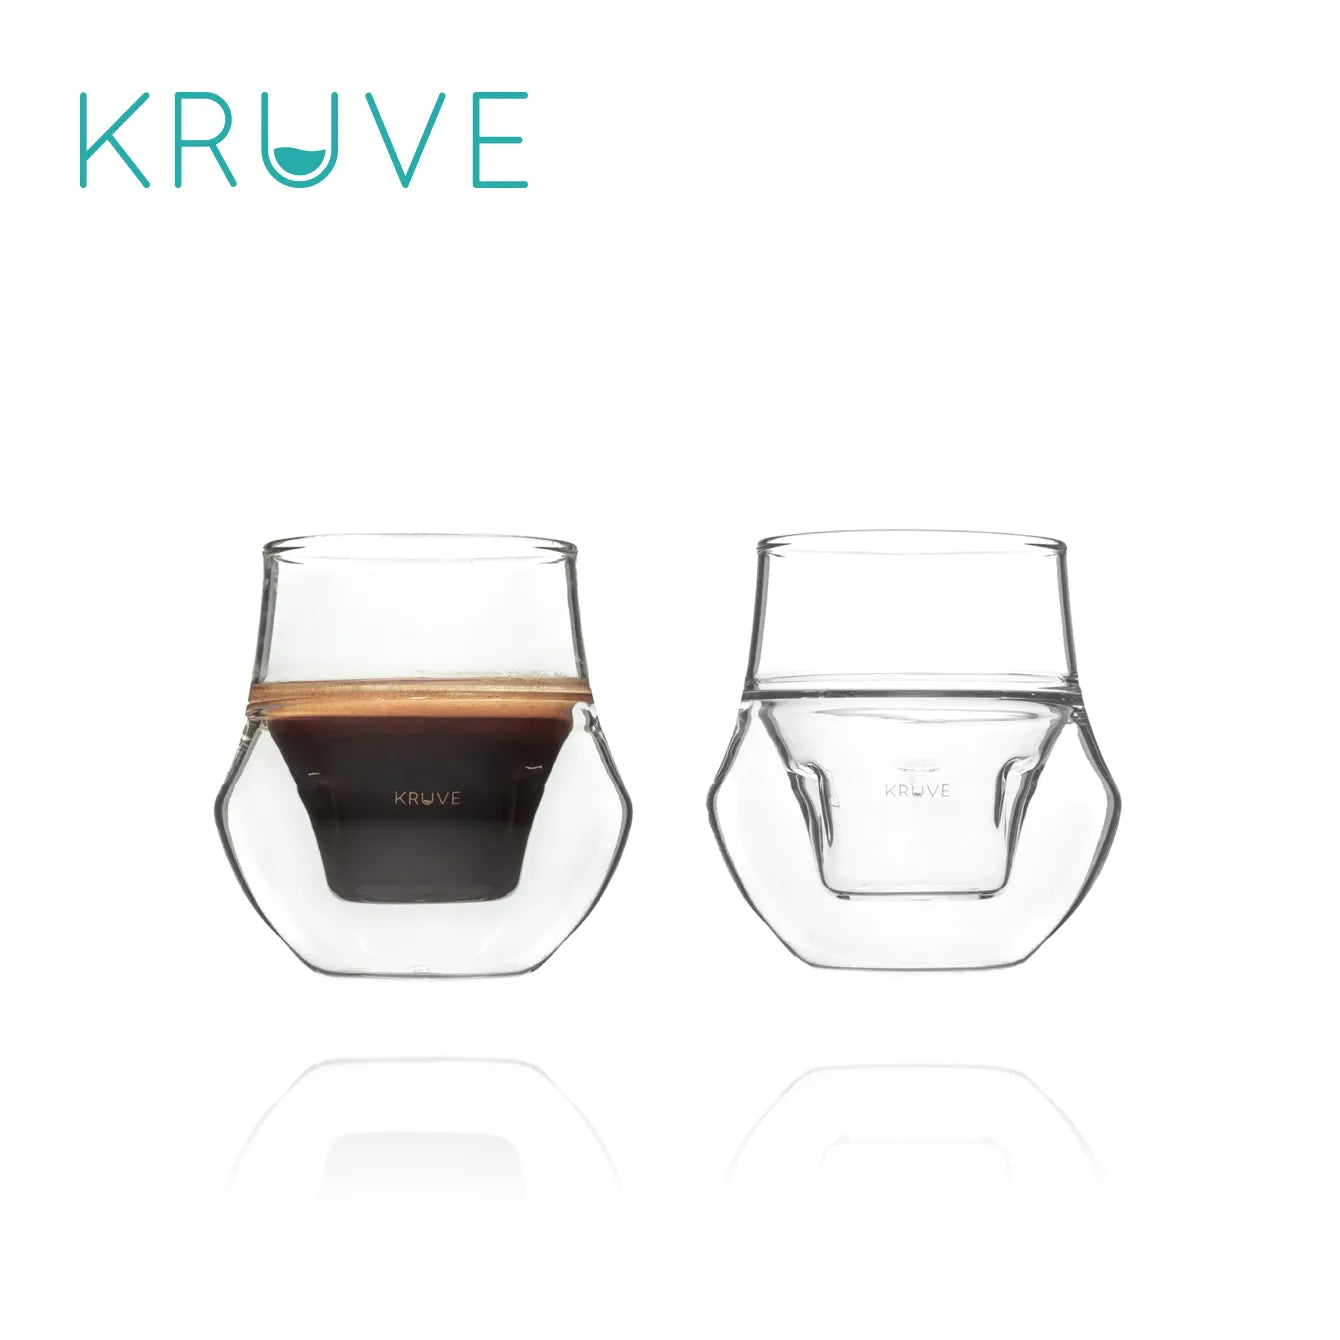 Kruve's Coffee Mugs